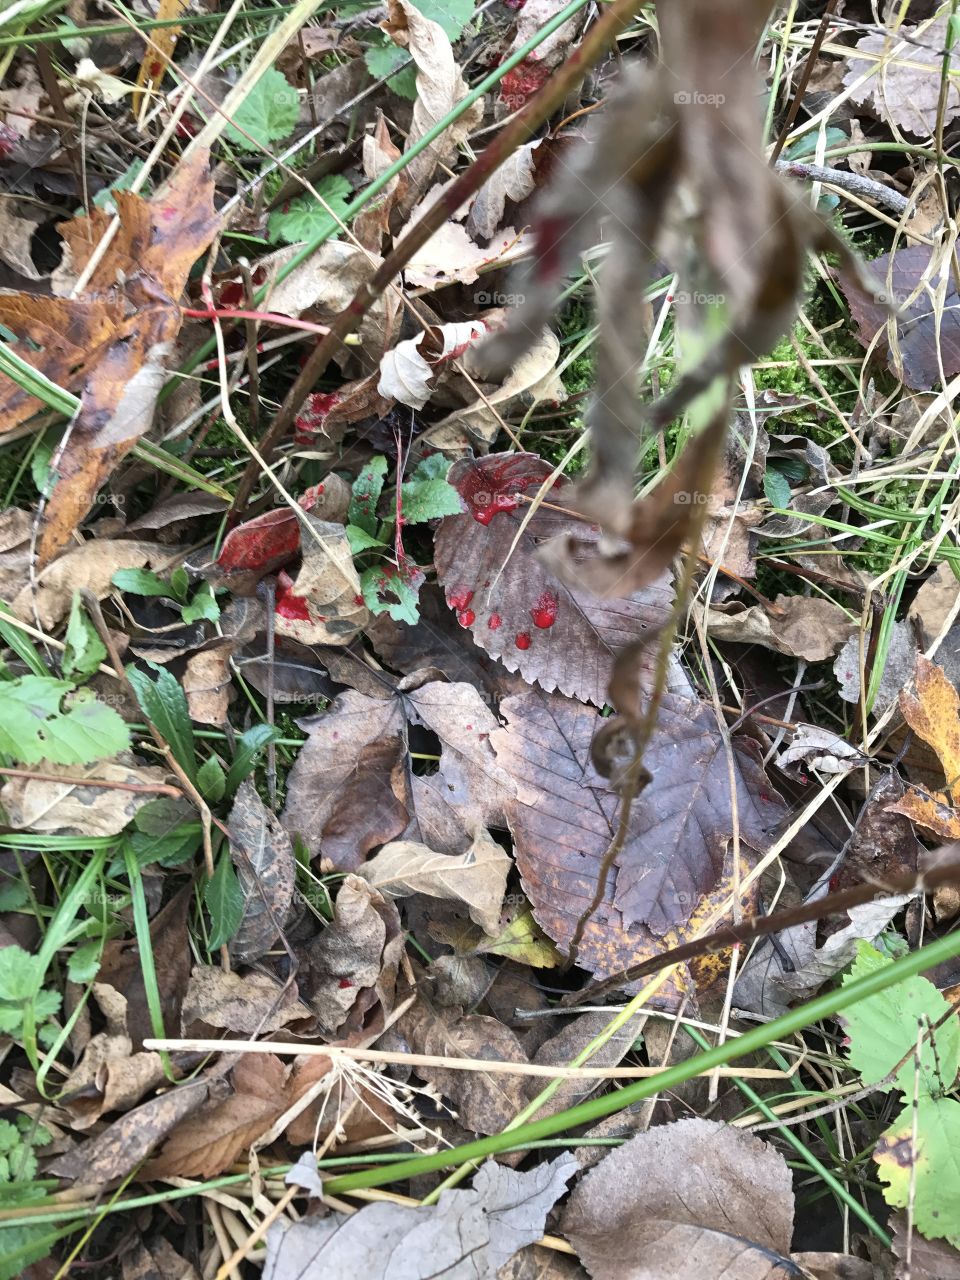 Blood trail whitetail deer.